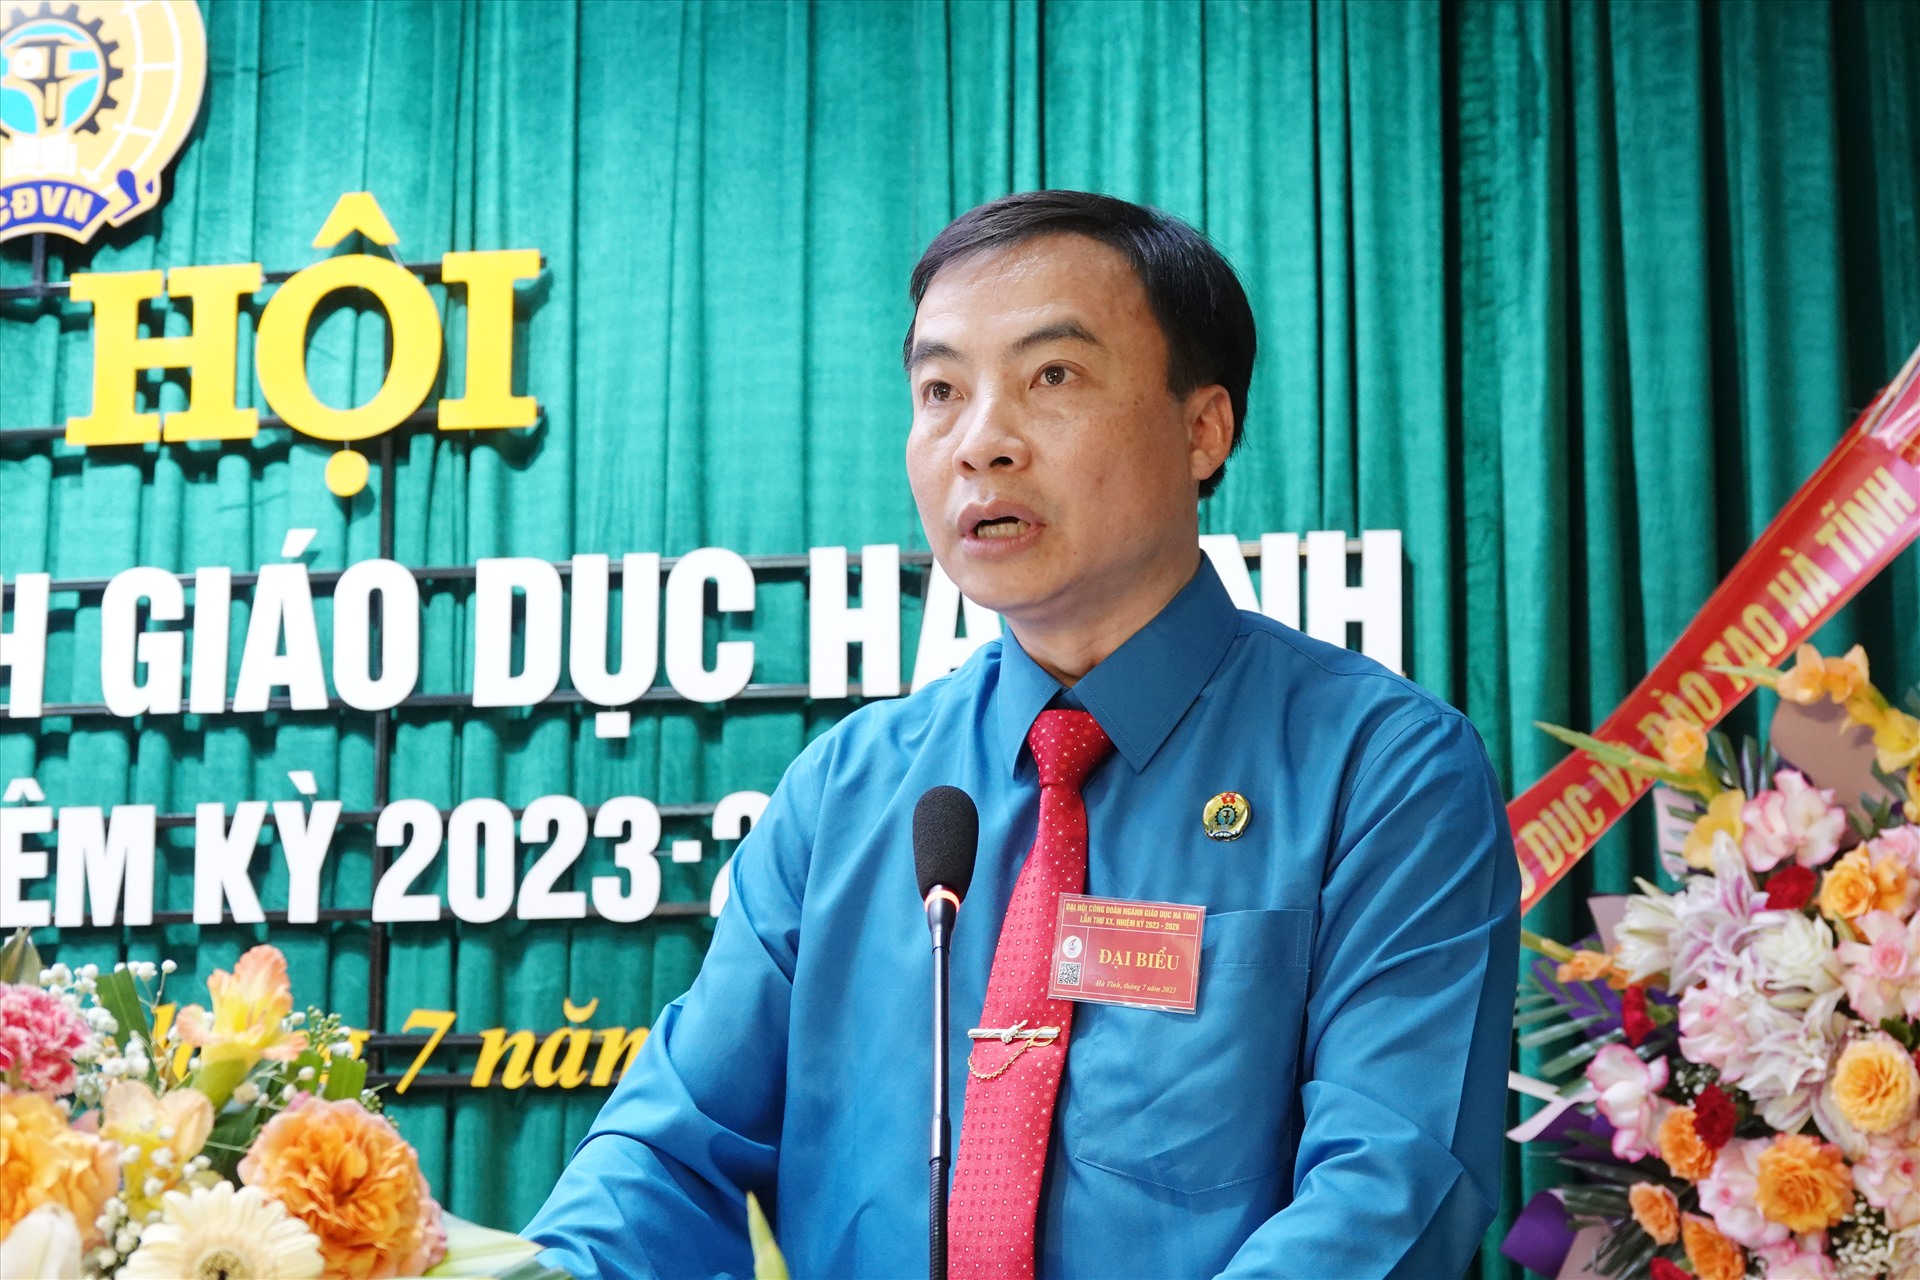 Ông Trần Hậu Tú tái cử Chủ tịch Công đoàn ngành Giáo dục Hà Tĩnh nhiệm kỳ 2023 - 2028. Ảnh: Trần Tuấn.